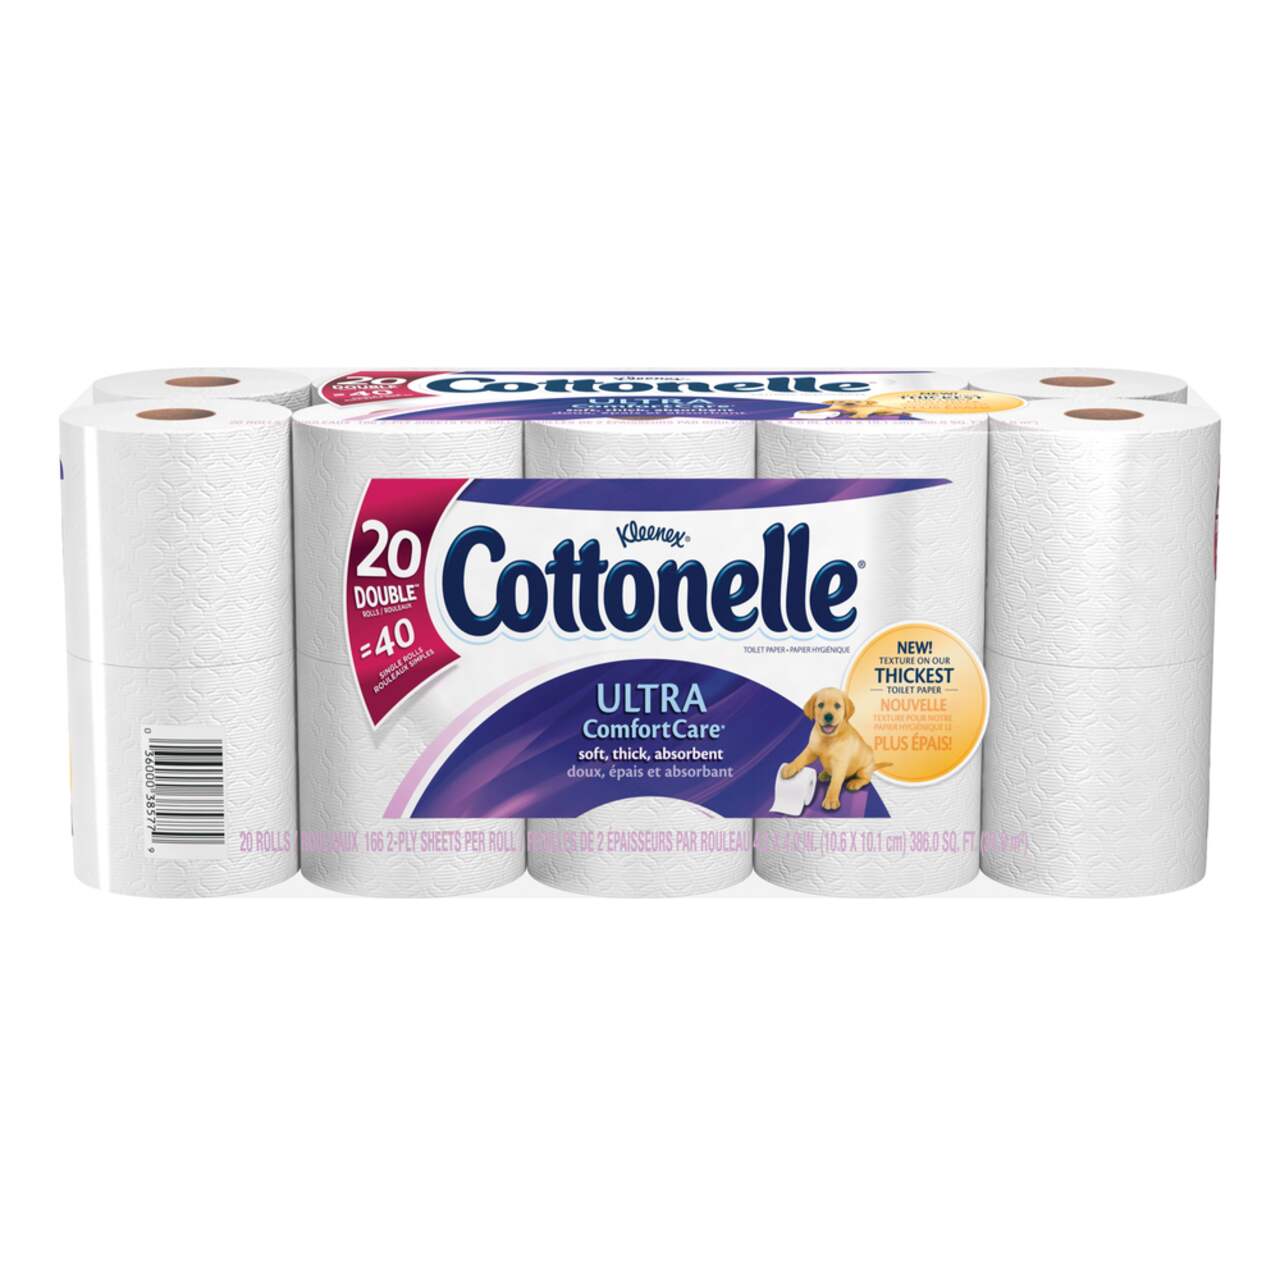 Papier hygiénique Cottonelle Ultra Comfort Care, 20 rouleaux